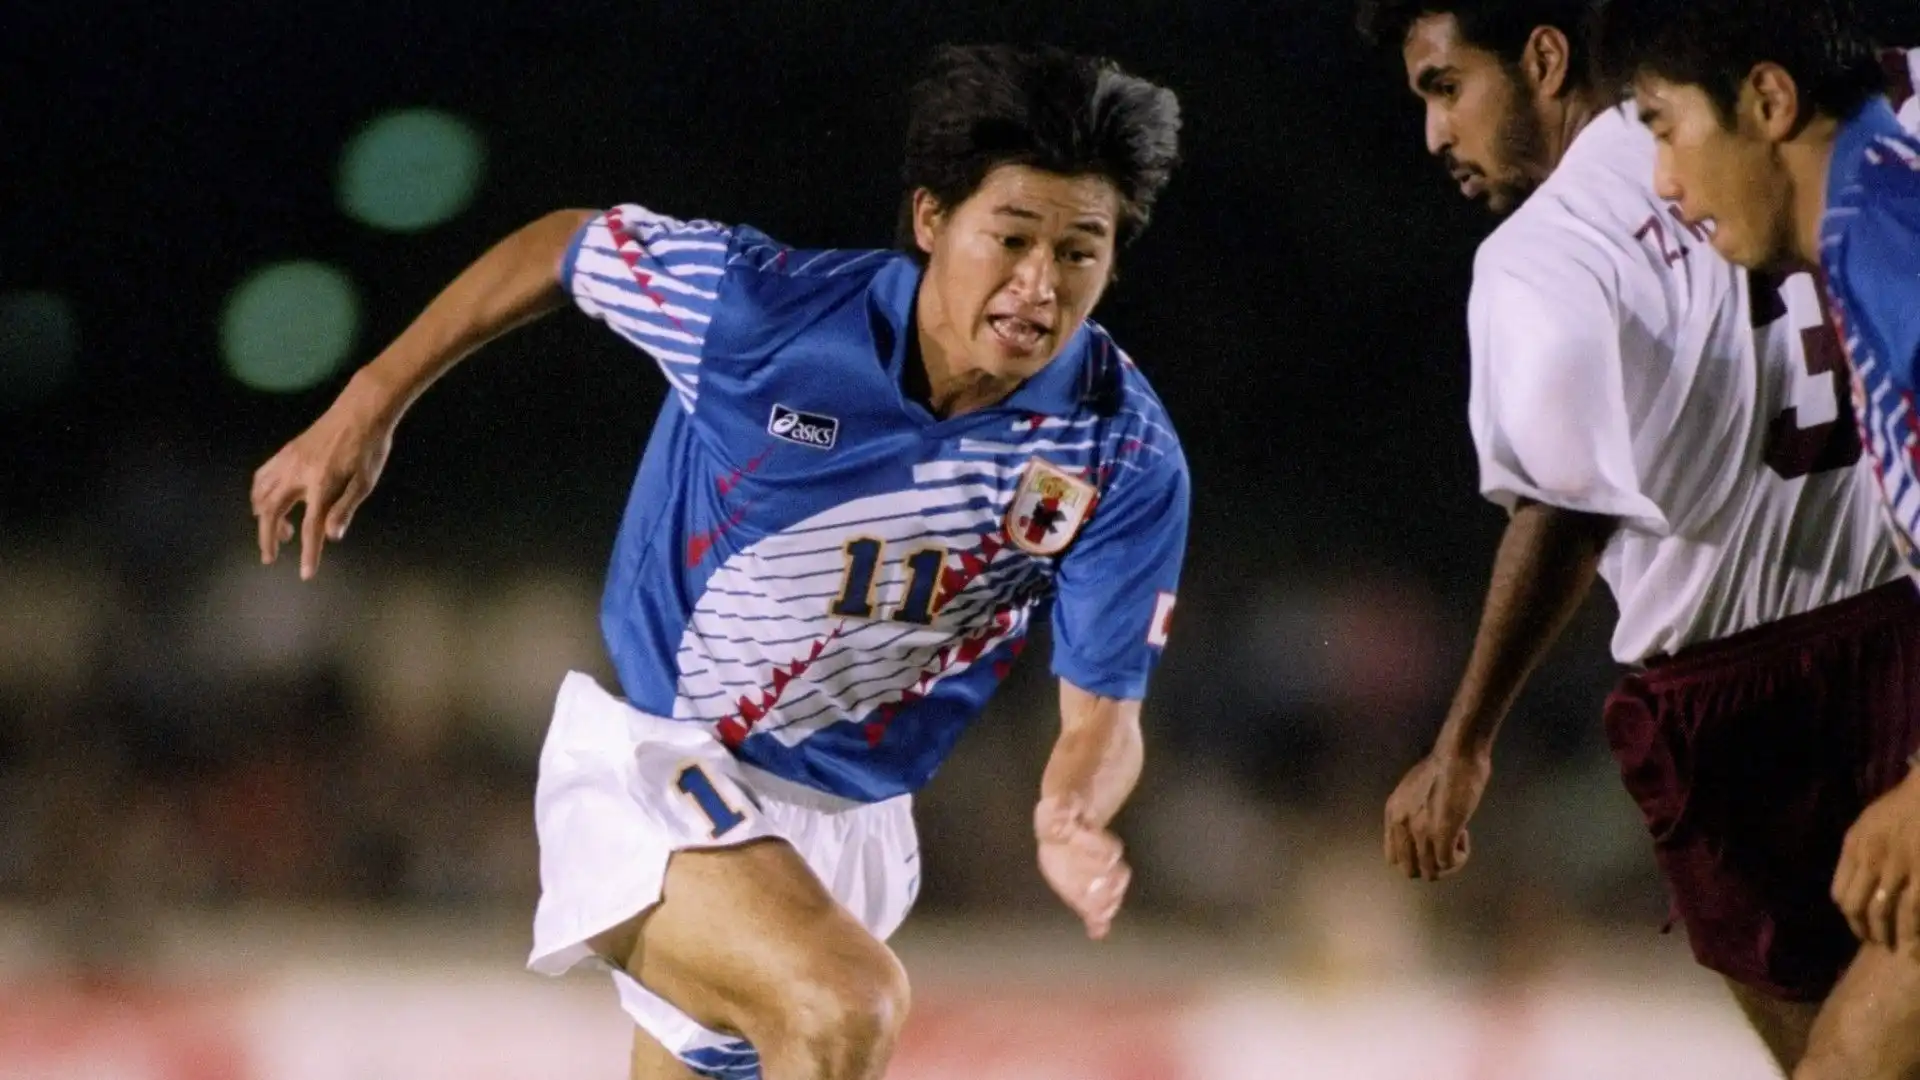 2- Al secondo posto c'è la leggenda Kazuyoshi Miura, che in 55 partite ha segnato 42 gol